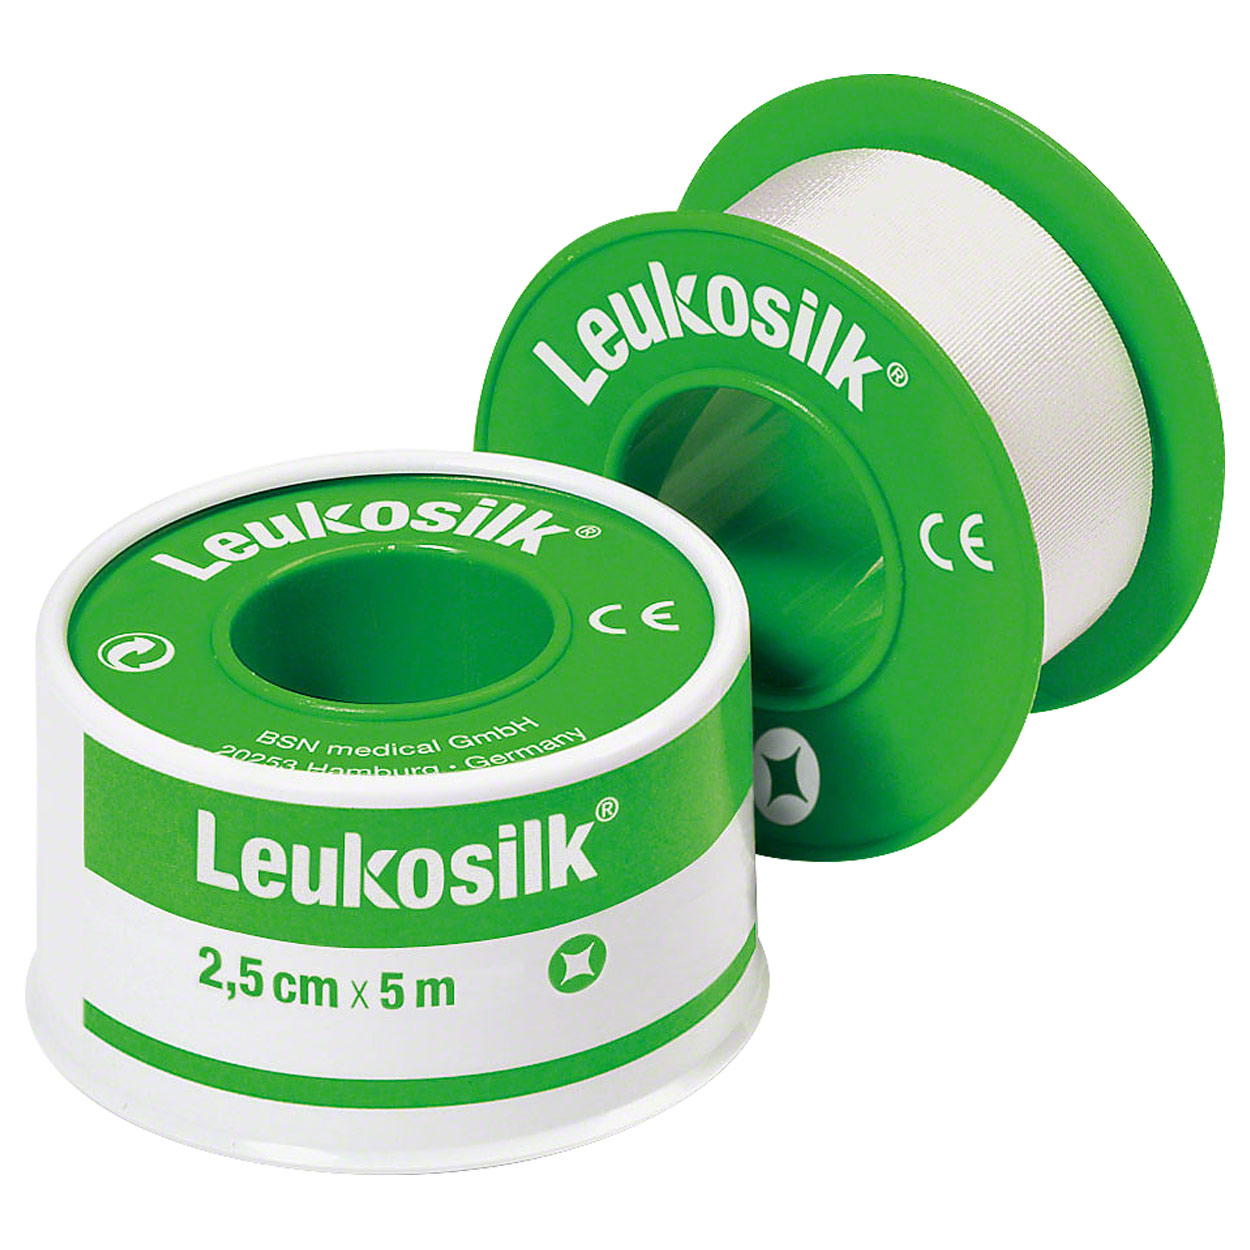 Leukosilk roll plaster, 5 m x 2,5 cm, 1 piece buy online